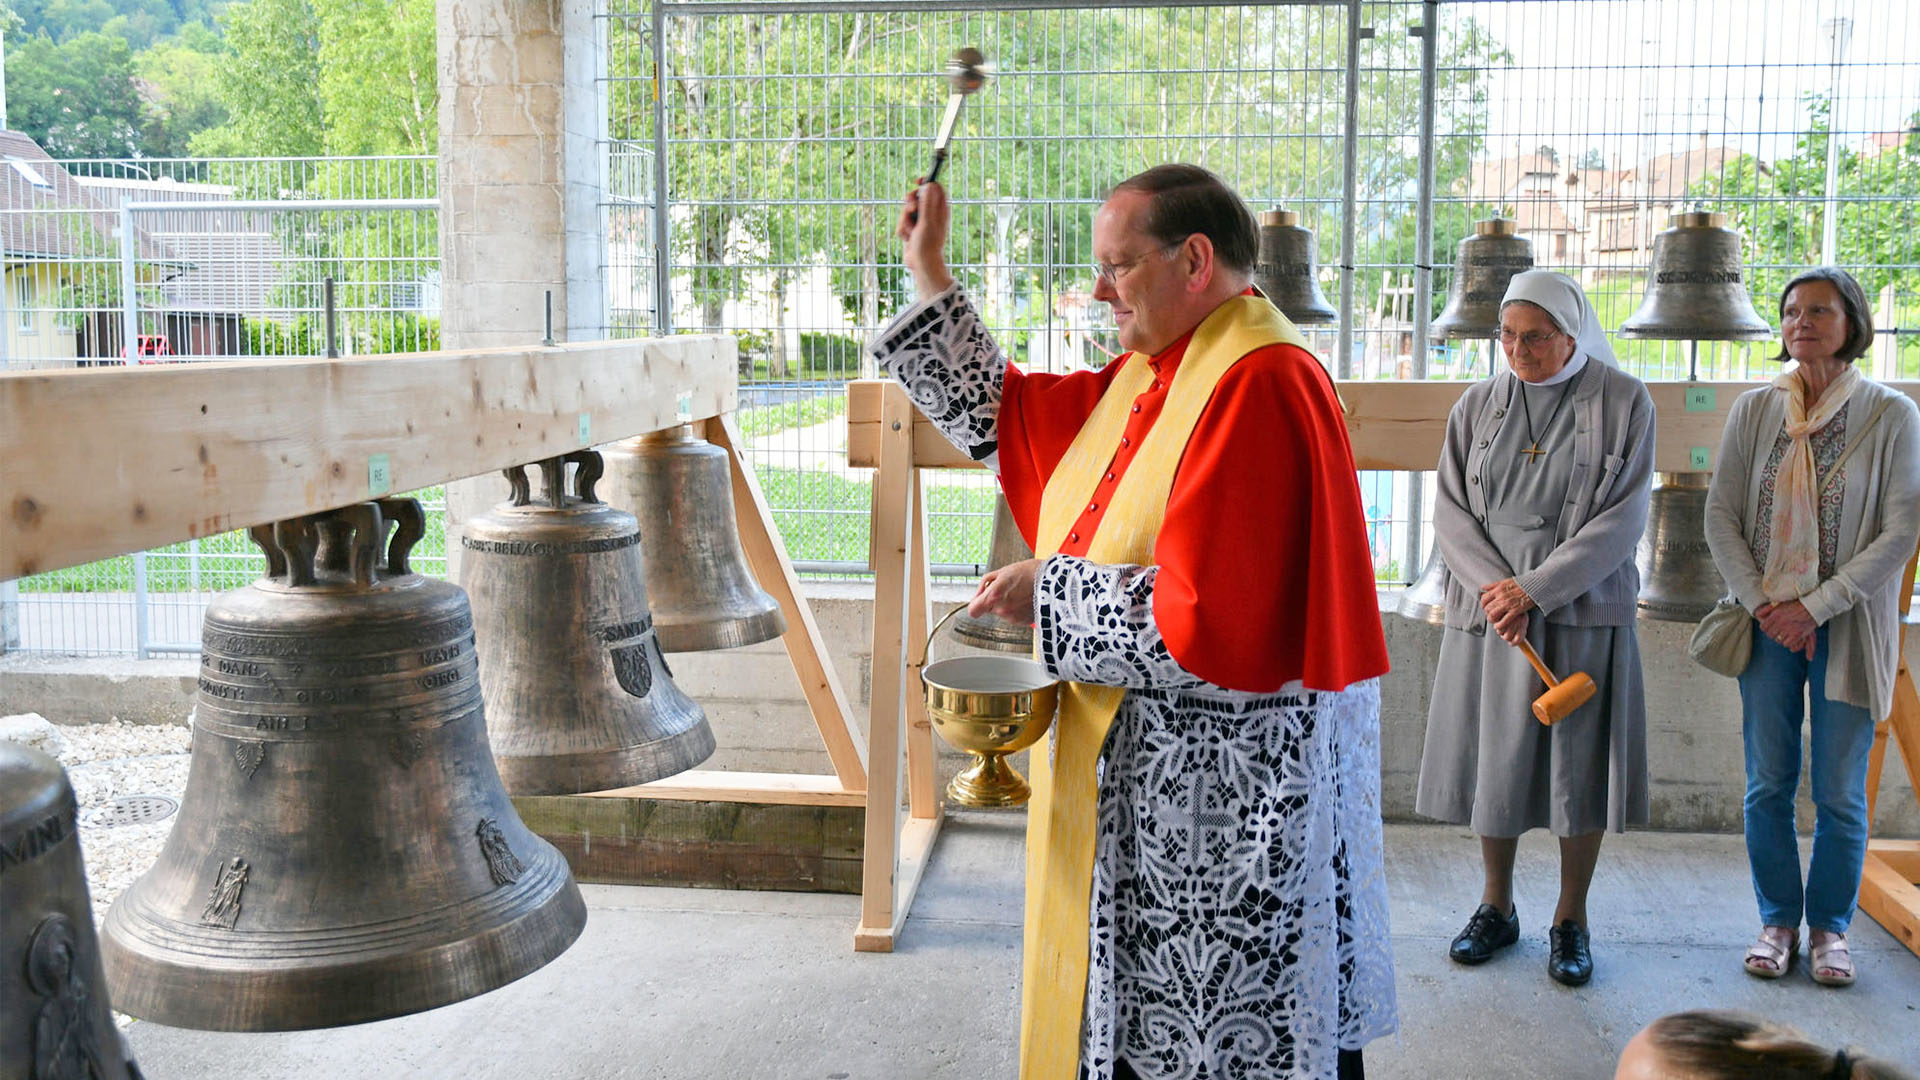 Le chanoine Thomas Rödder pendant le baptême des cloches à Moutier | © Philippe Girardin / Flickr / CC BY-NC-ND 2.0